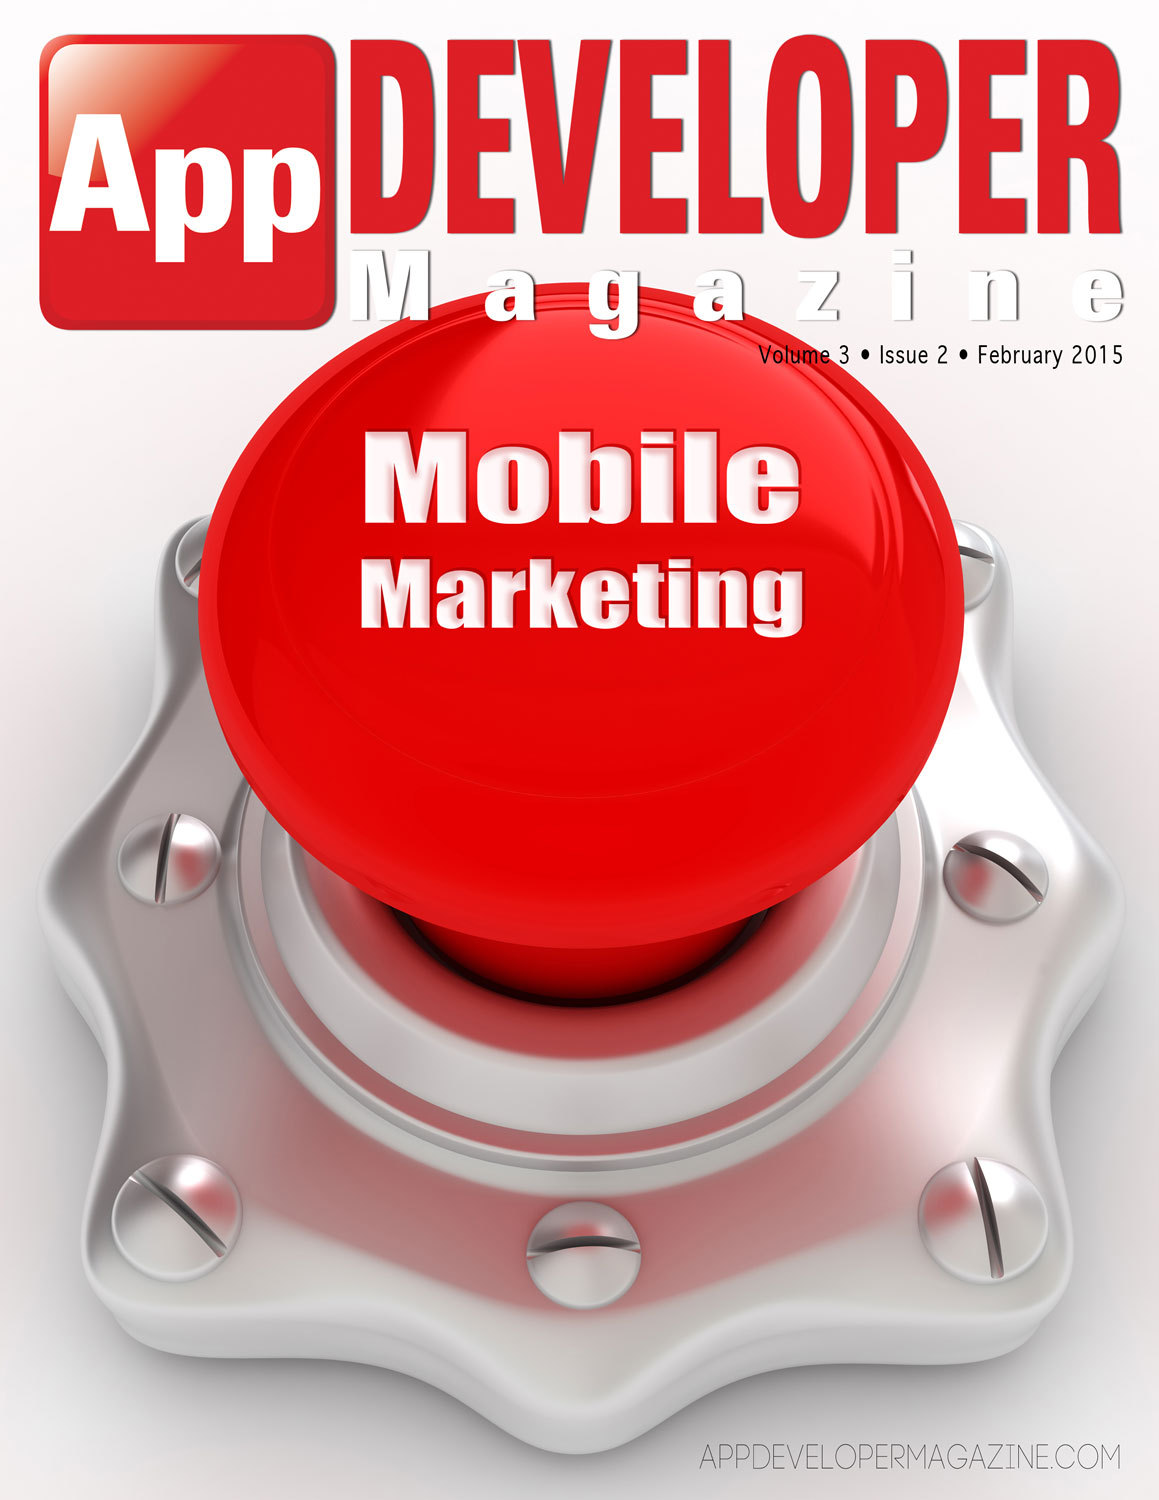 App Developer Magazine February 2015 Cover